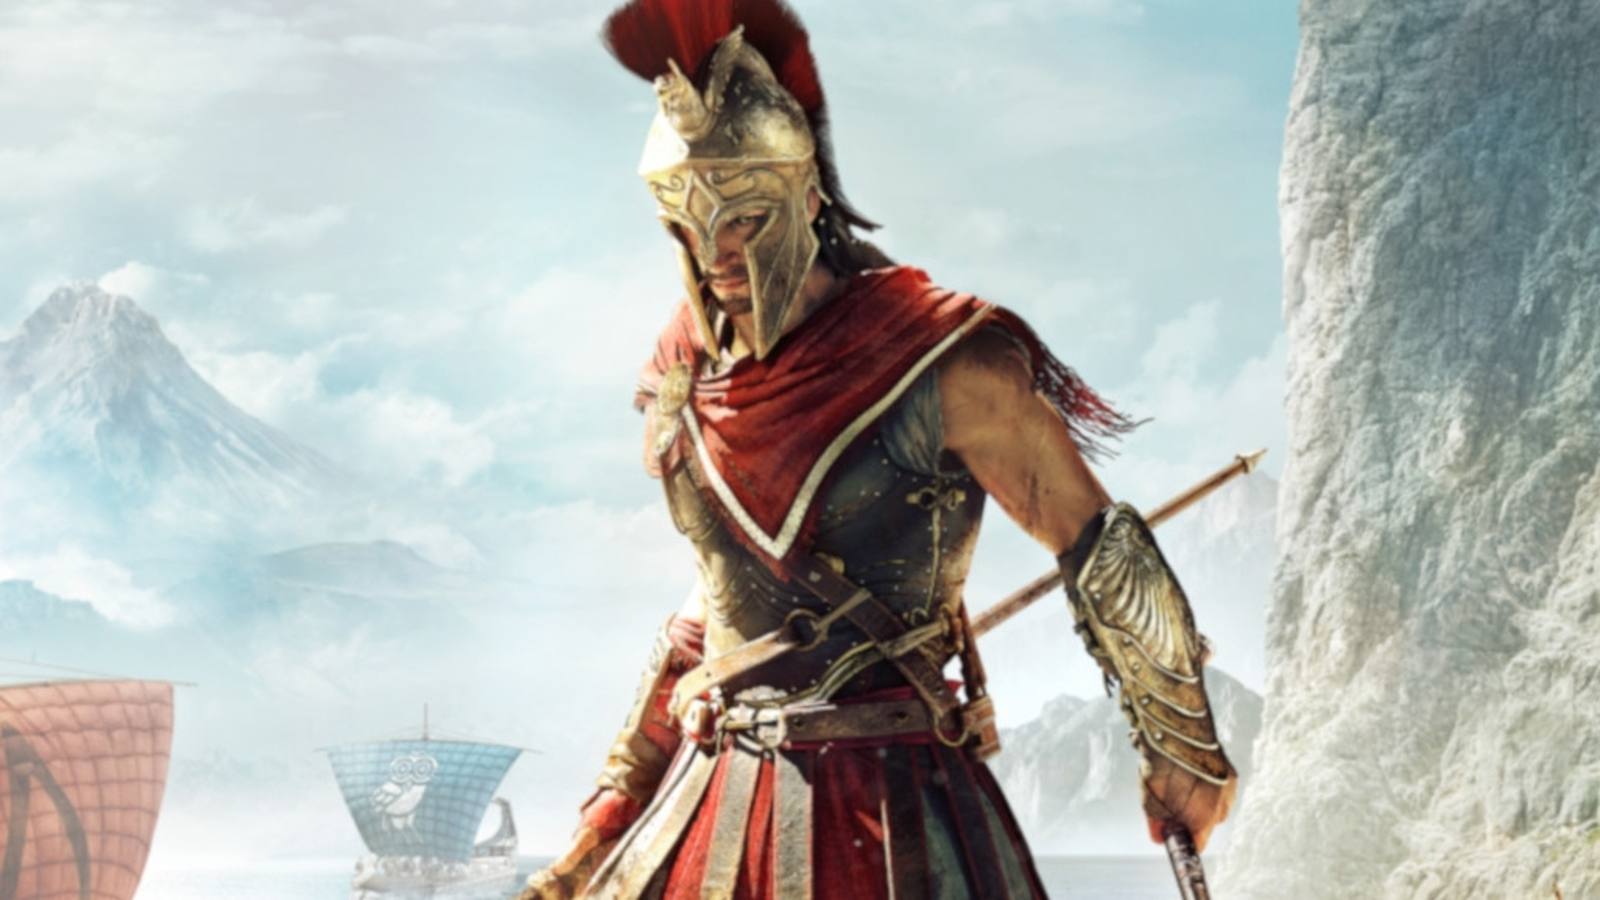 Assassin's Creed Odyssey: veja requisitos e como baixar o game